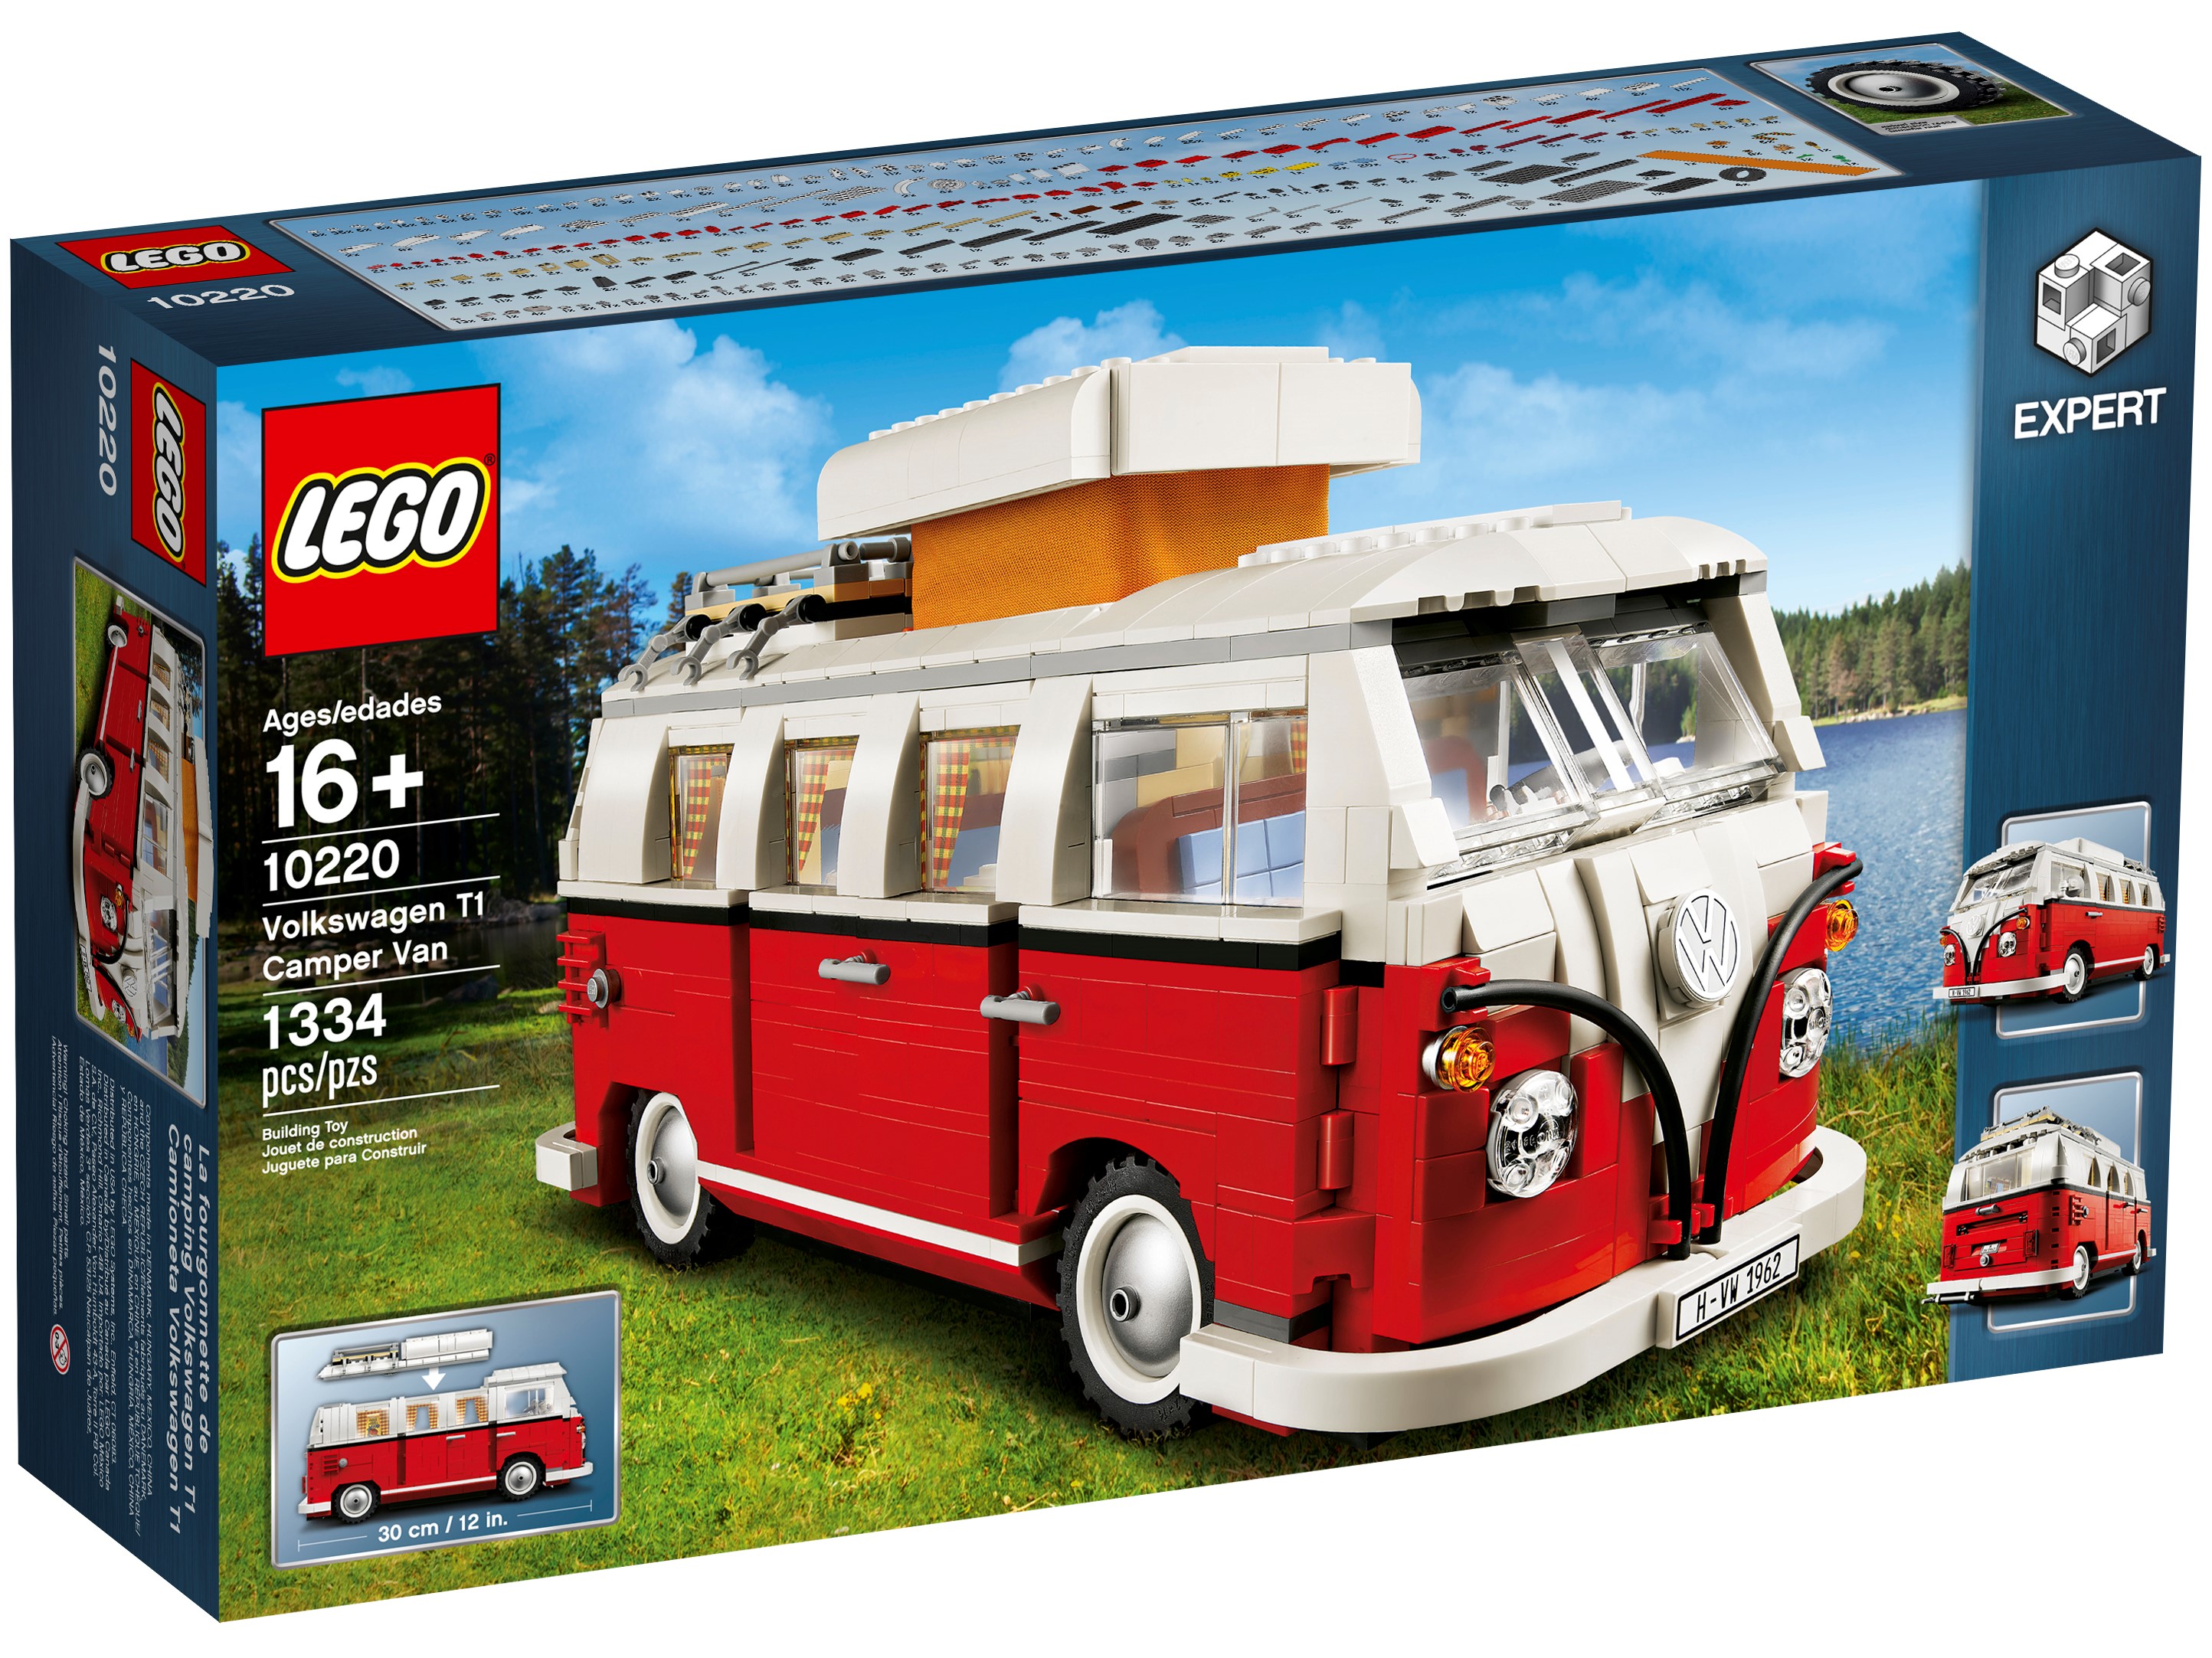 volkswagen bus lego set